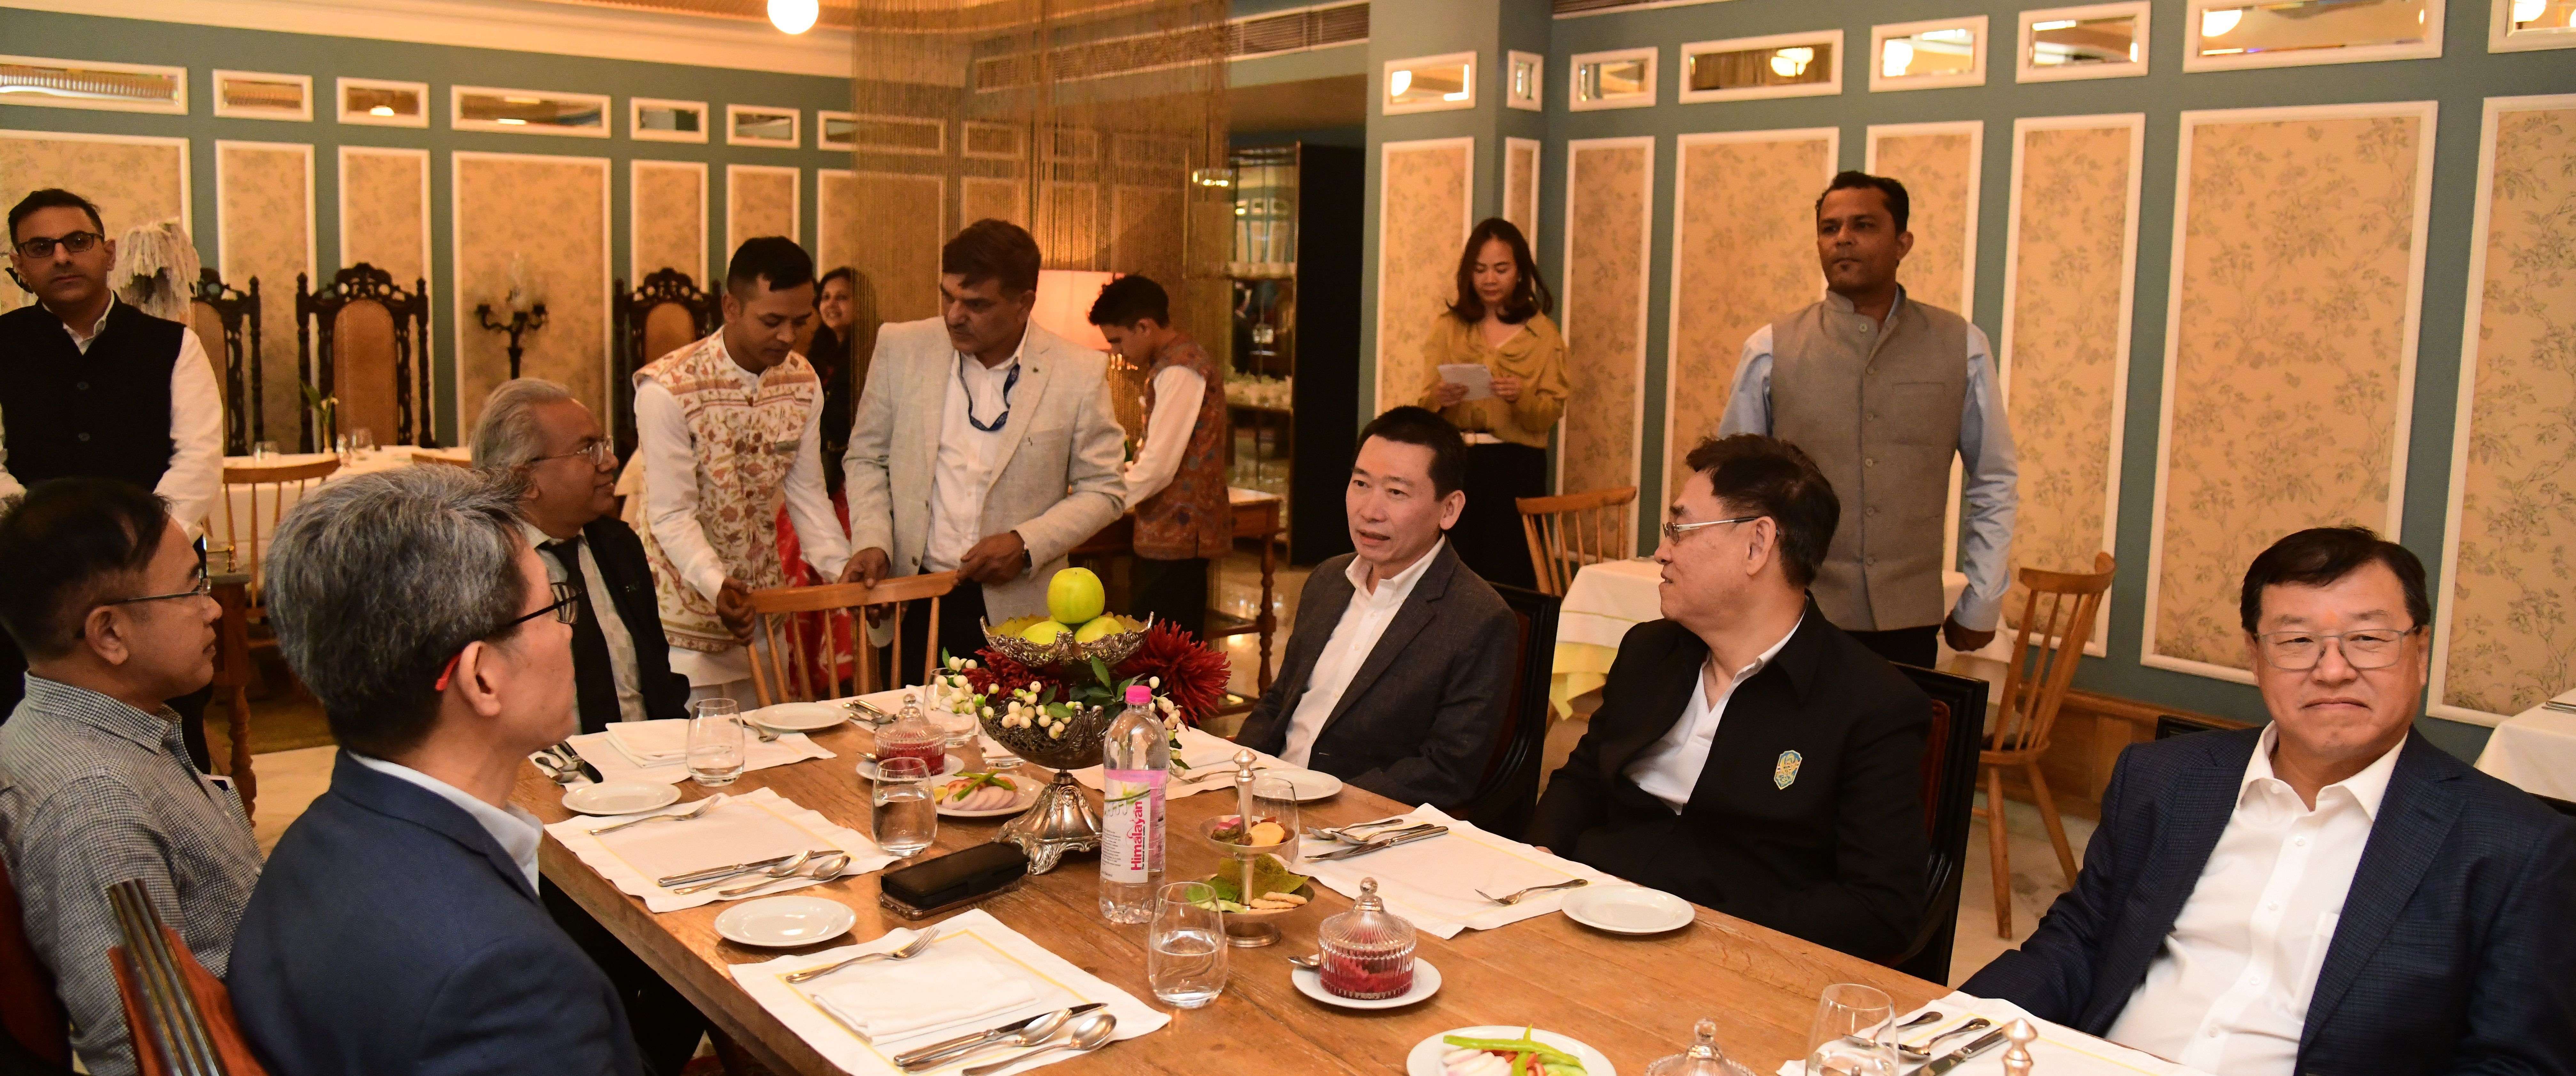 थाईलैंड के उप प्रधानमंत्री बोले-ग्रीन एनर्जी में भारत का भविष्य सुनहरा